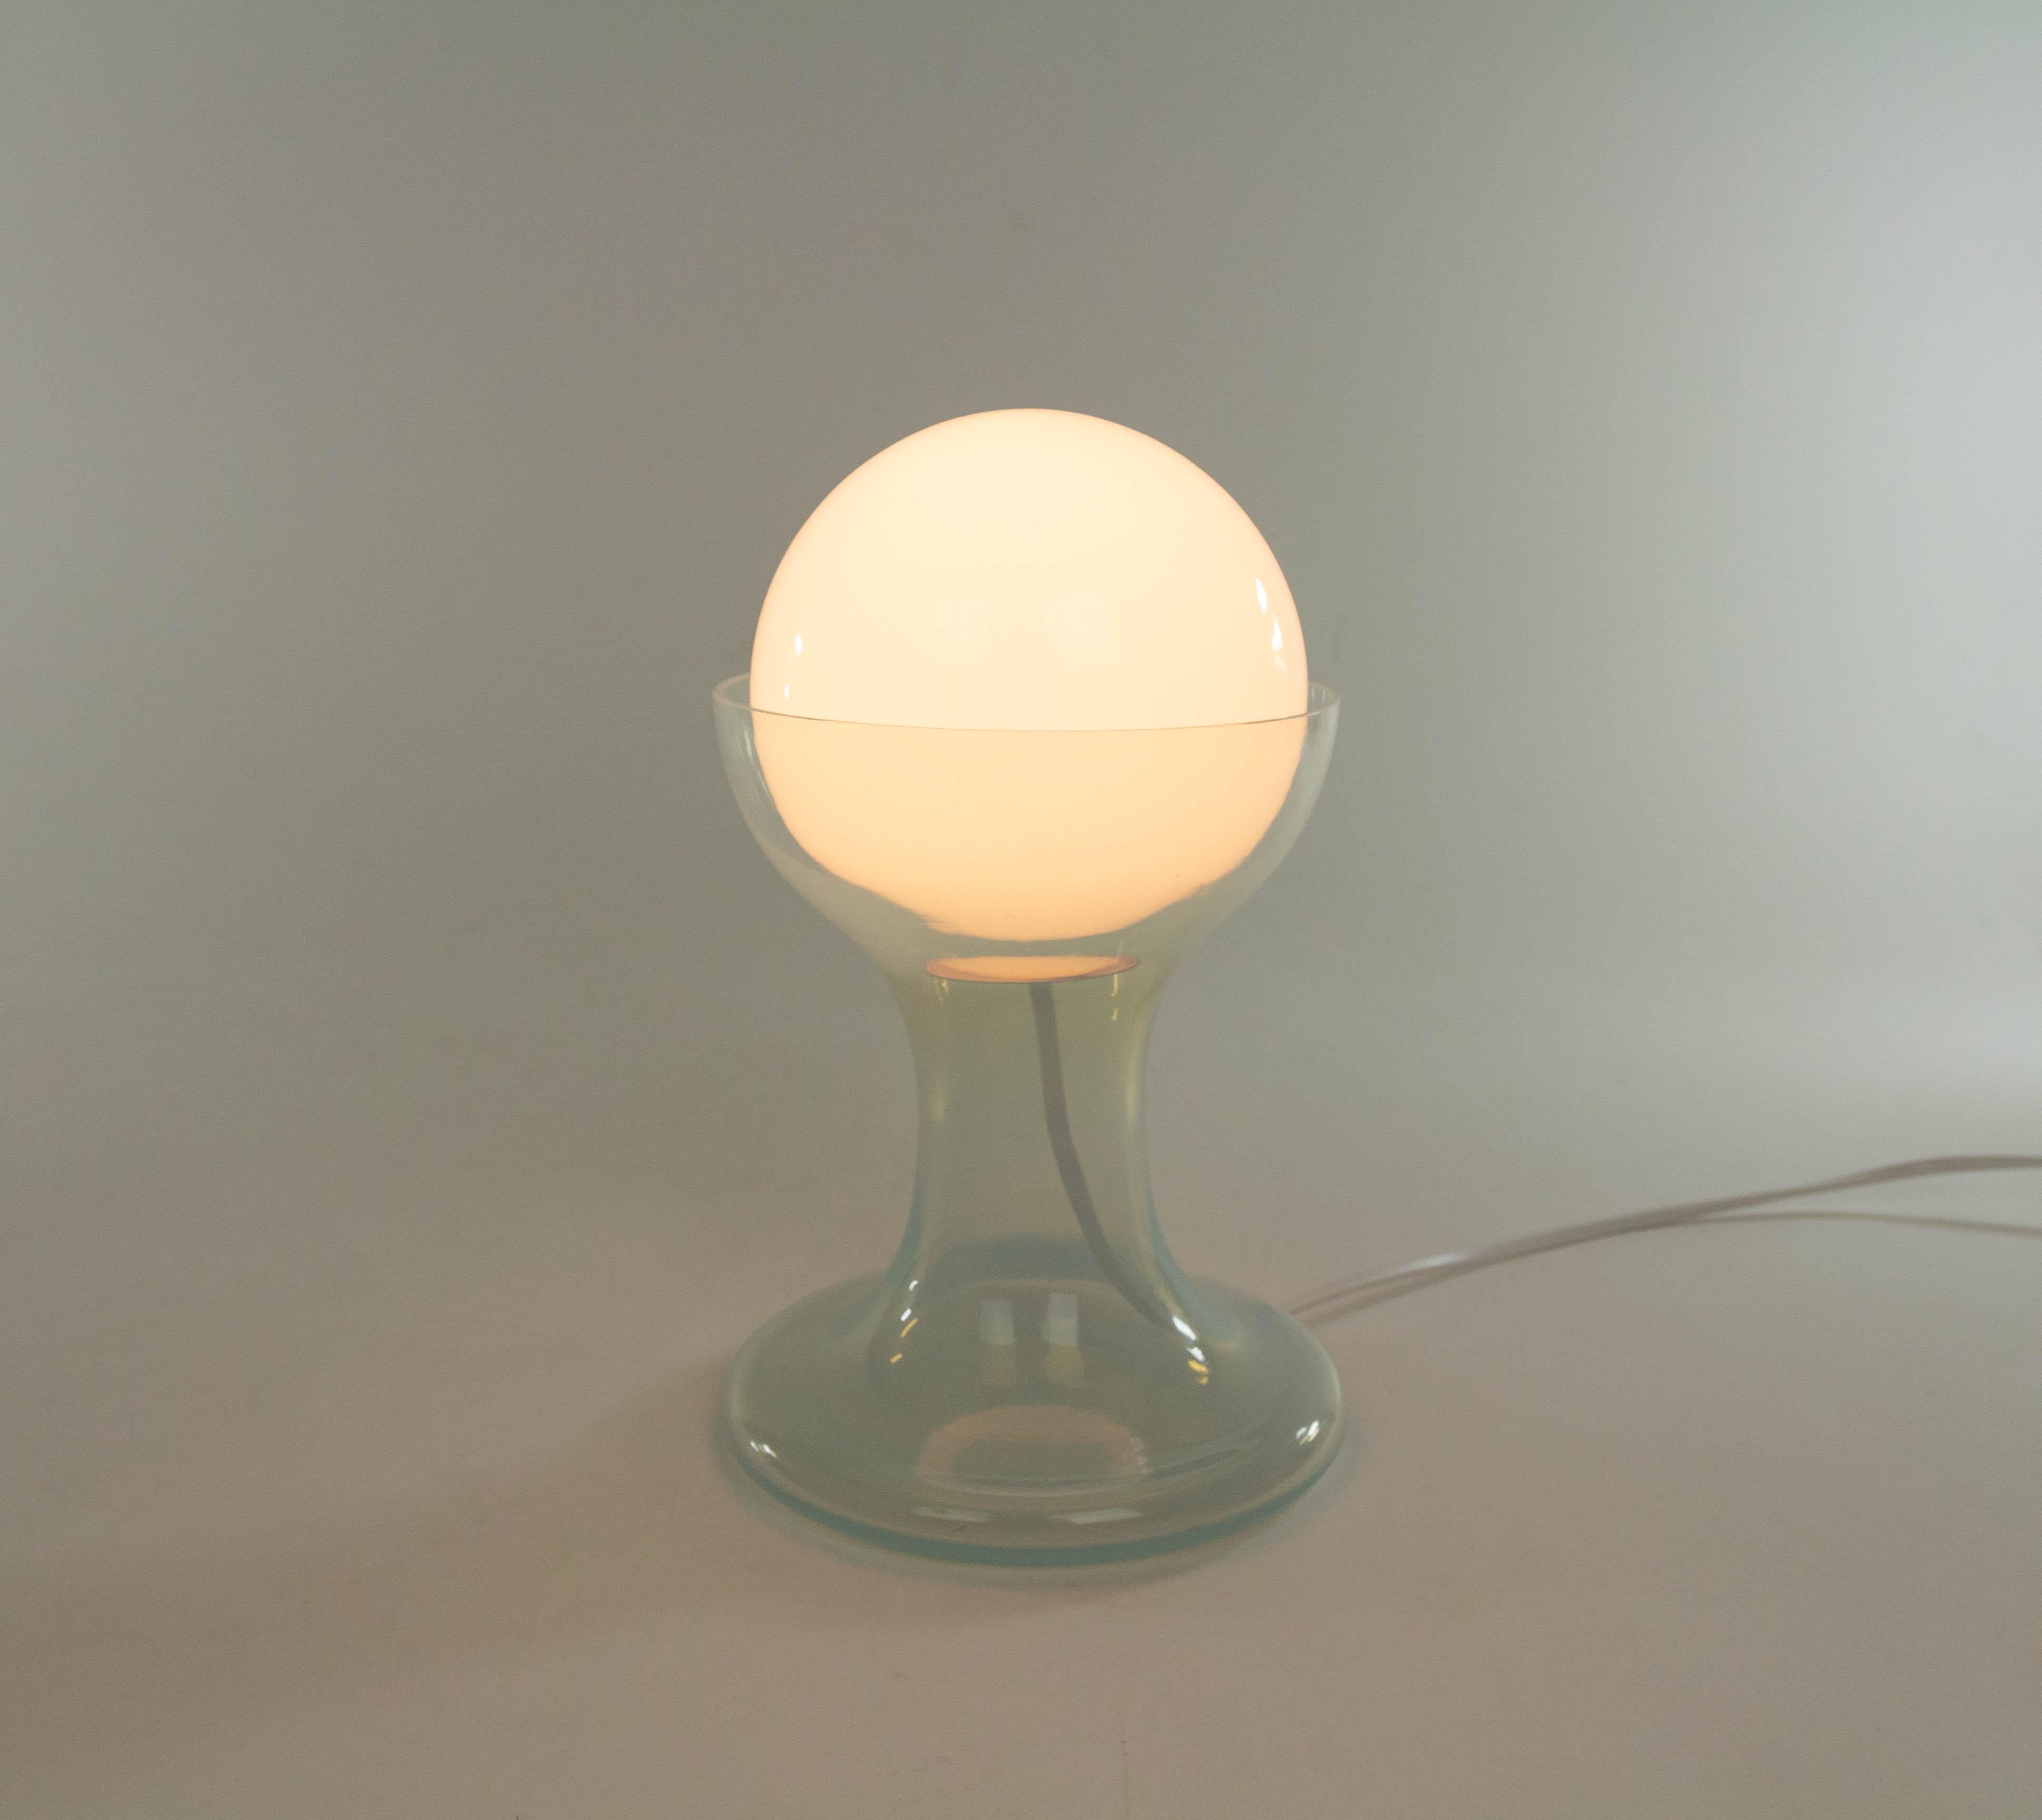 Lampe de table LT 215 conçue par Carlo Nason et fabriquée dans les années 1960 par le verrier Murano A.V. Mazzega. La lampe est composée d'un globe en verre blanc et d'une base en verre de Murano.

Ce modèle a été produit en deux tailles ; il s'agit